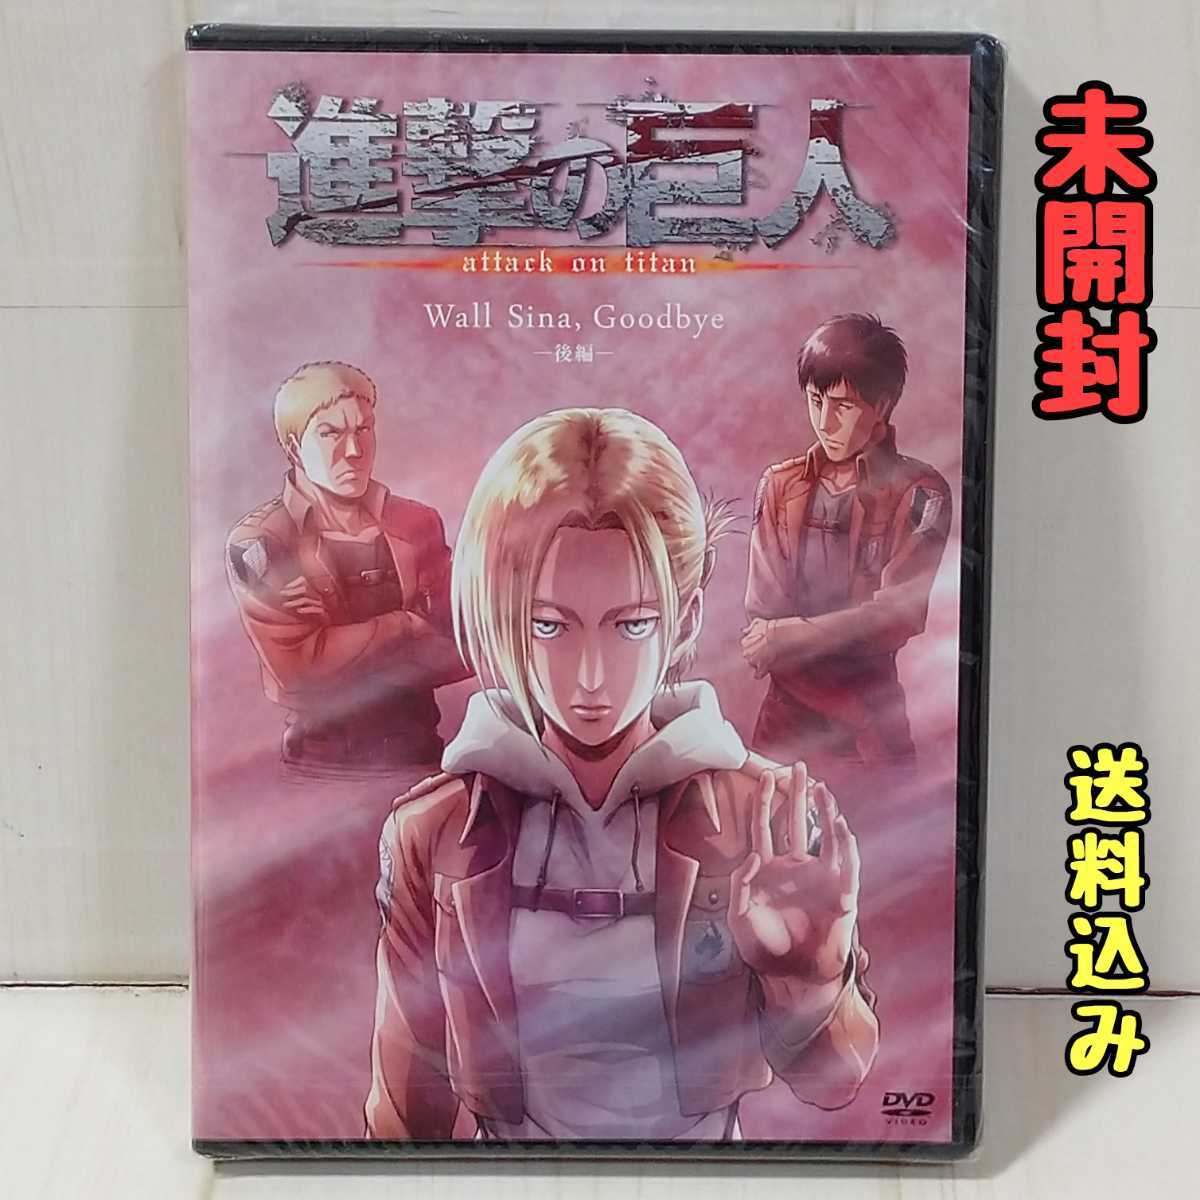 進撃の巨人OVA Wall Sina Goodbye 後編 25巻DVD付き限定版 アニレオン 